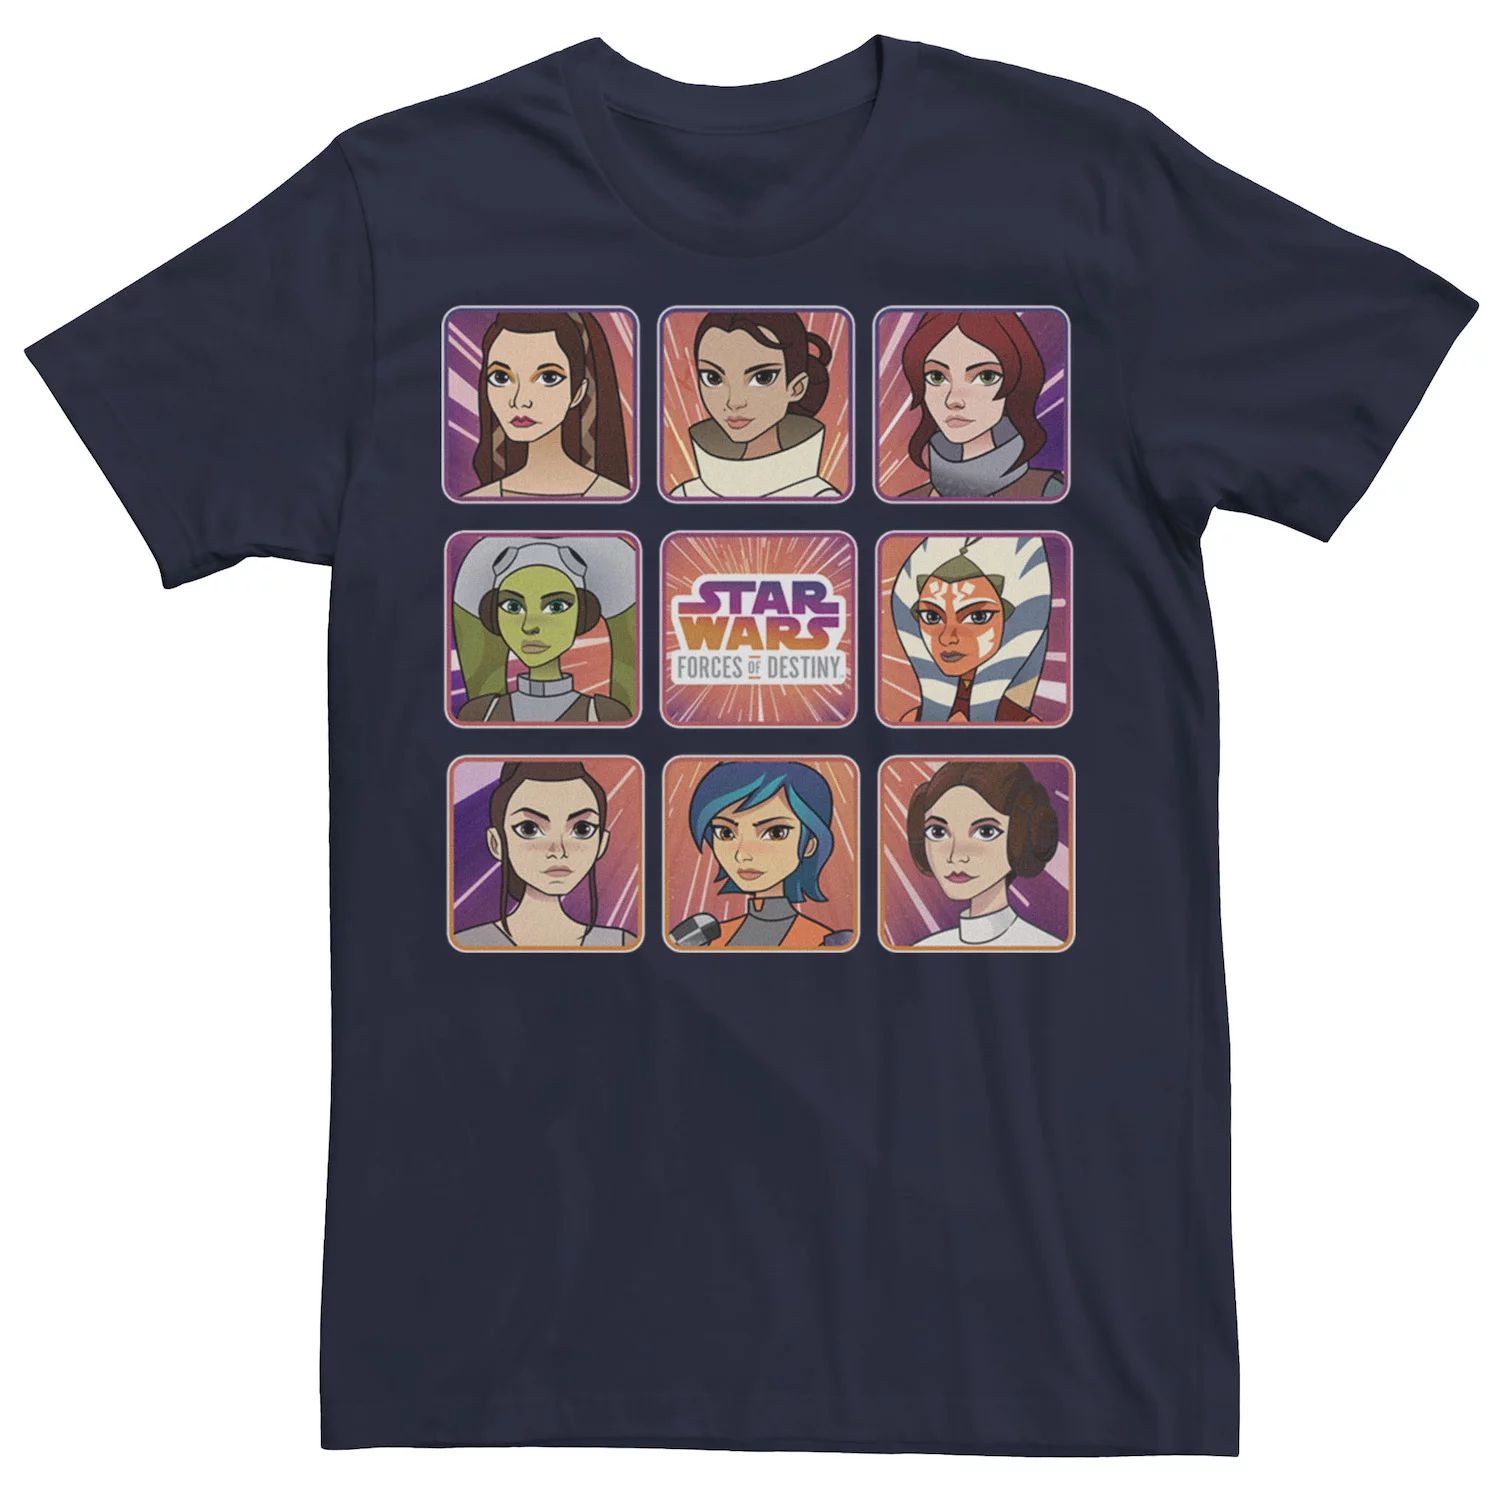 

Мужская футболка Forces of Destiny с изображением женского персонажа и коллажа Star Wars